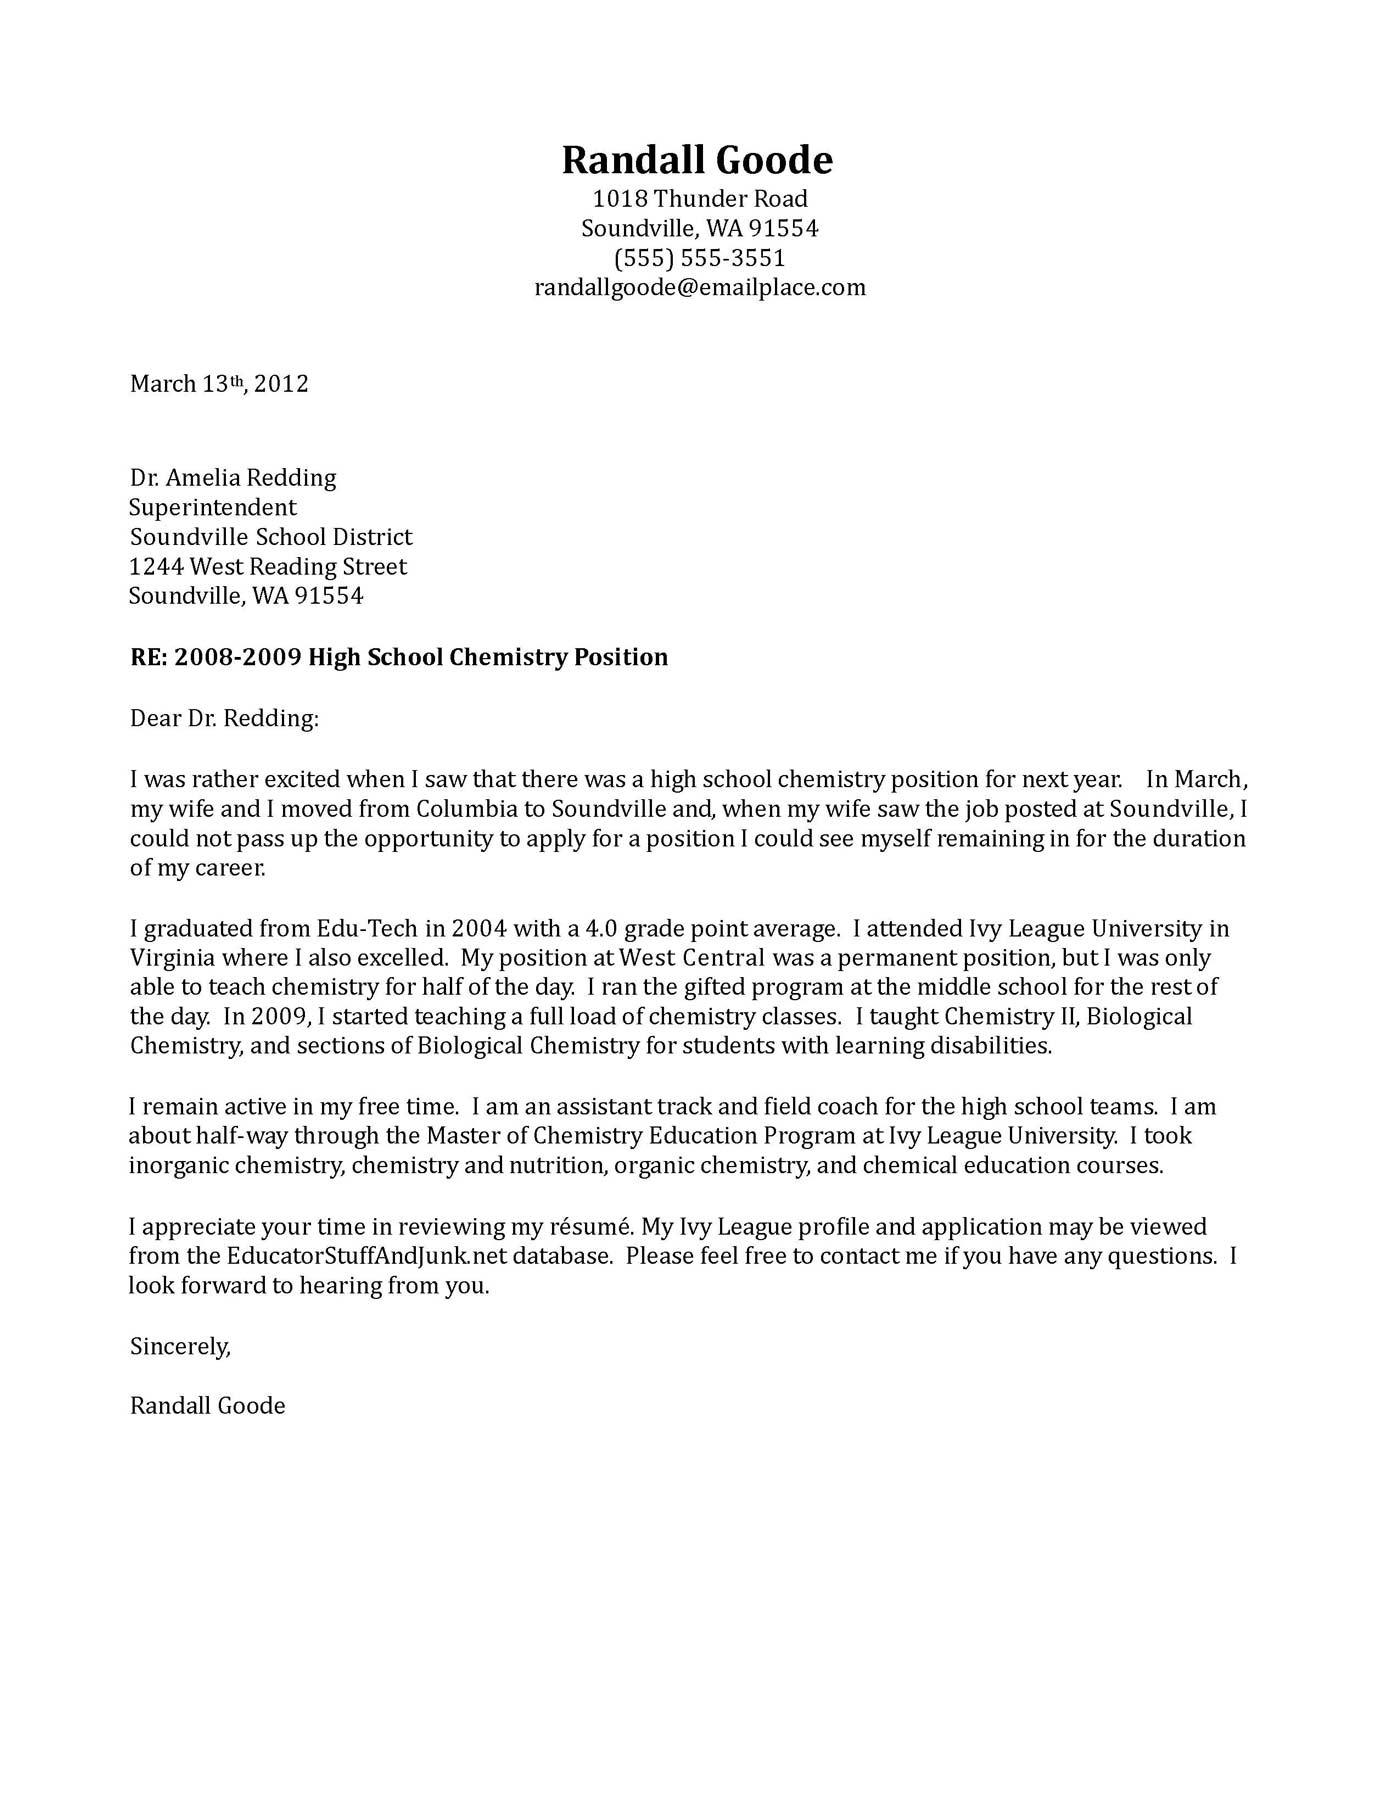 Cover Letter For Teachers High School Teacher Cover Letter With Letters Teacher Cover Letter